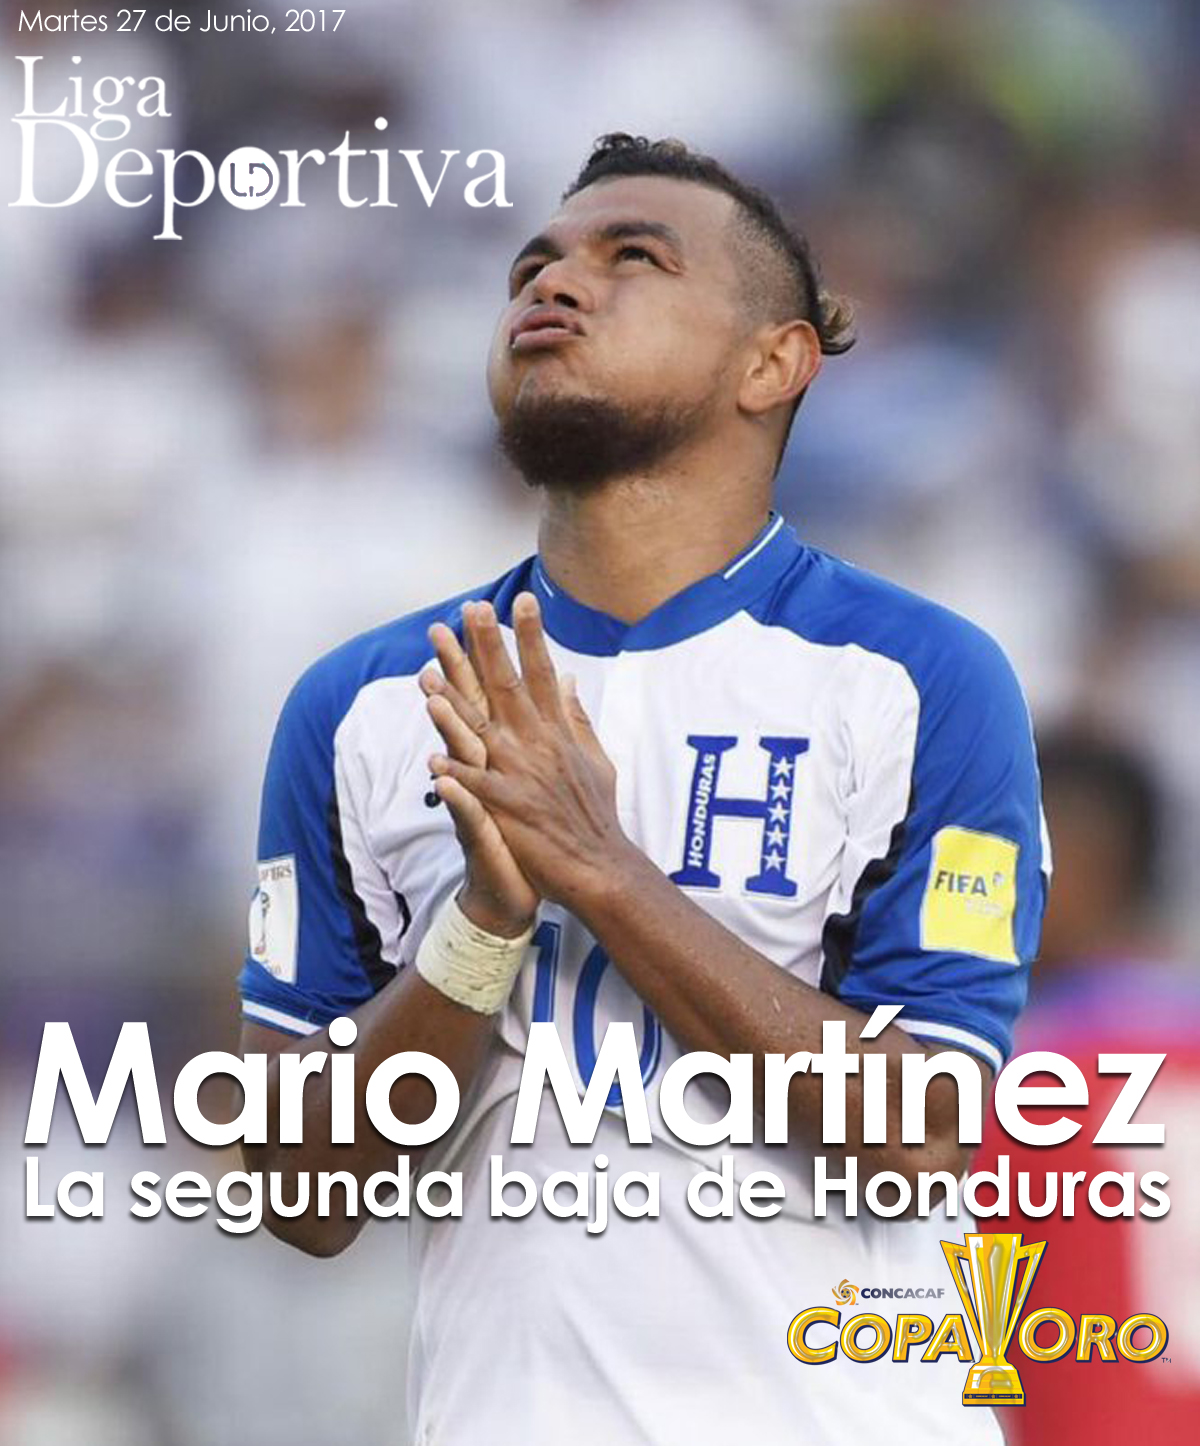 Mario Martínez, segunda baja de Honduras en Copa Oro 